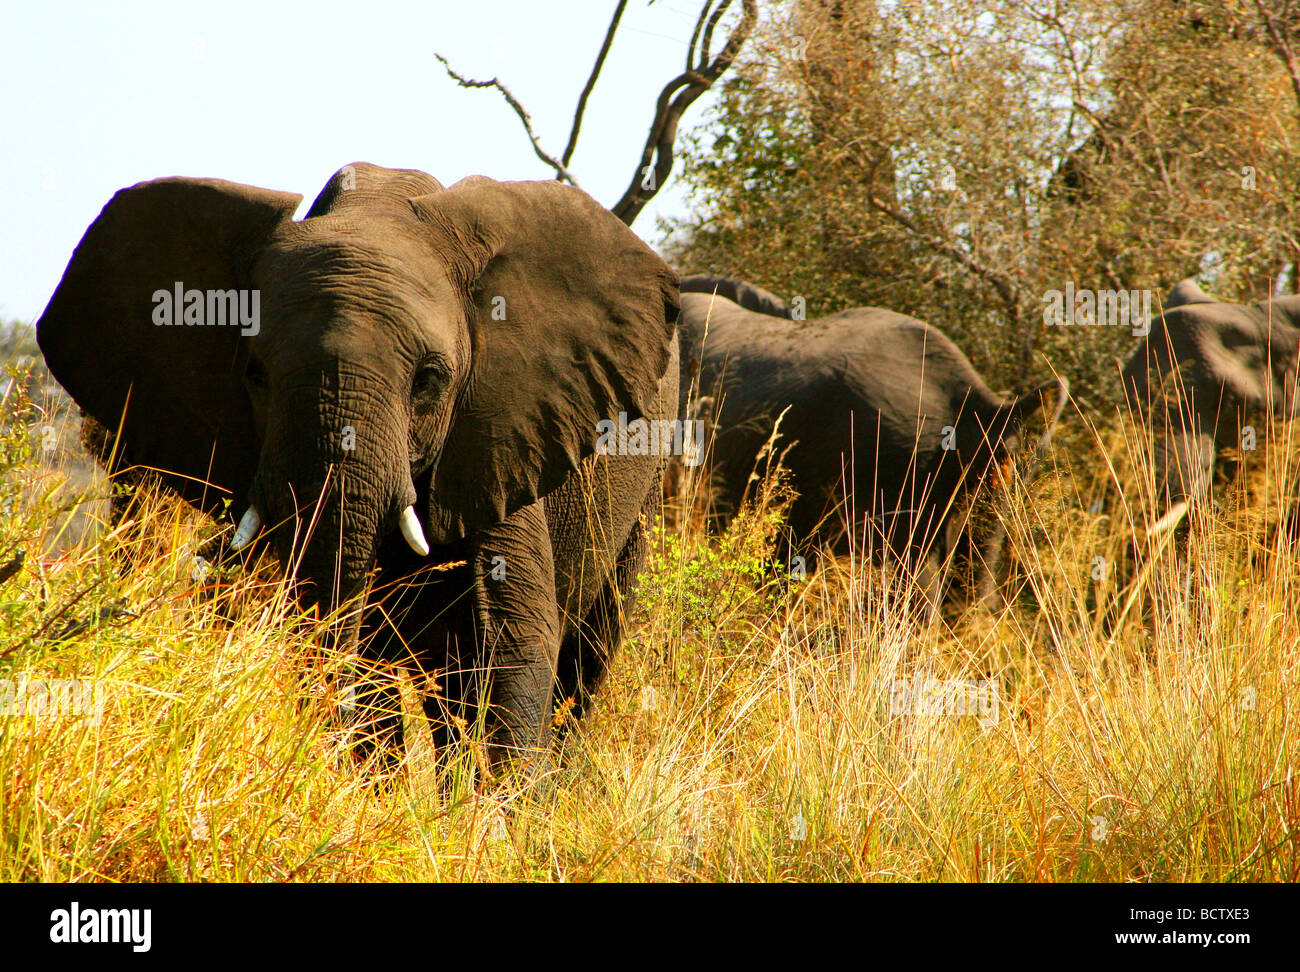 Les éléphants d'Afrique (Loxodonta africana) dans une forêt, le Mudumu National Park, Namibie Banque D'Images